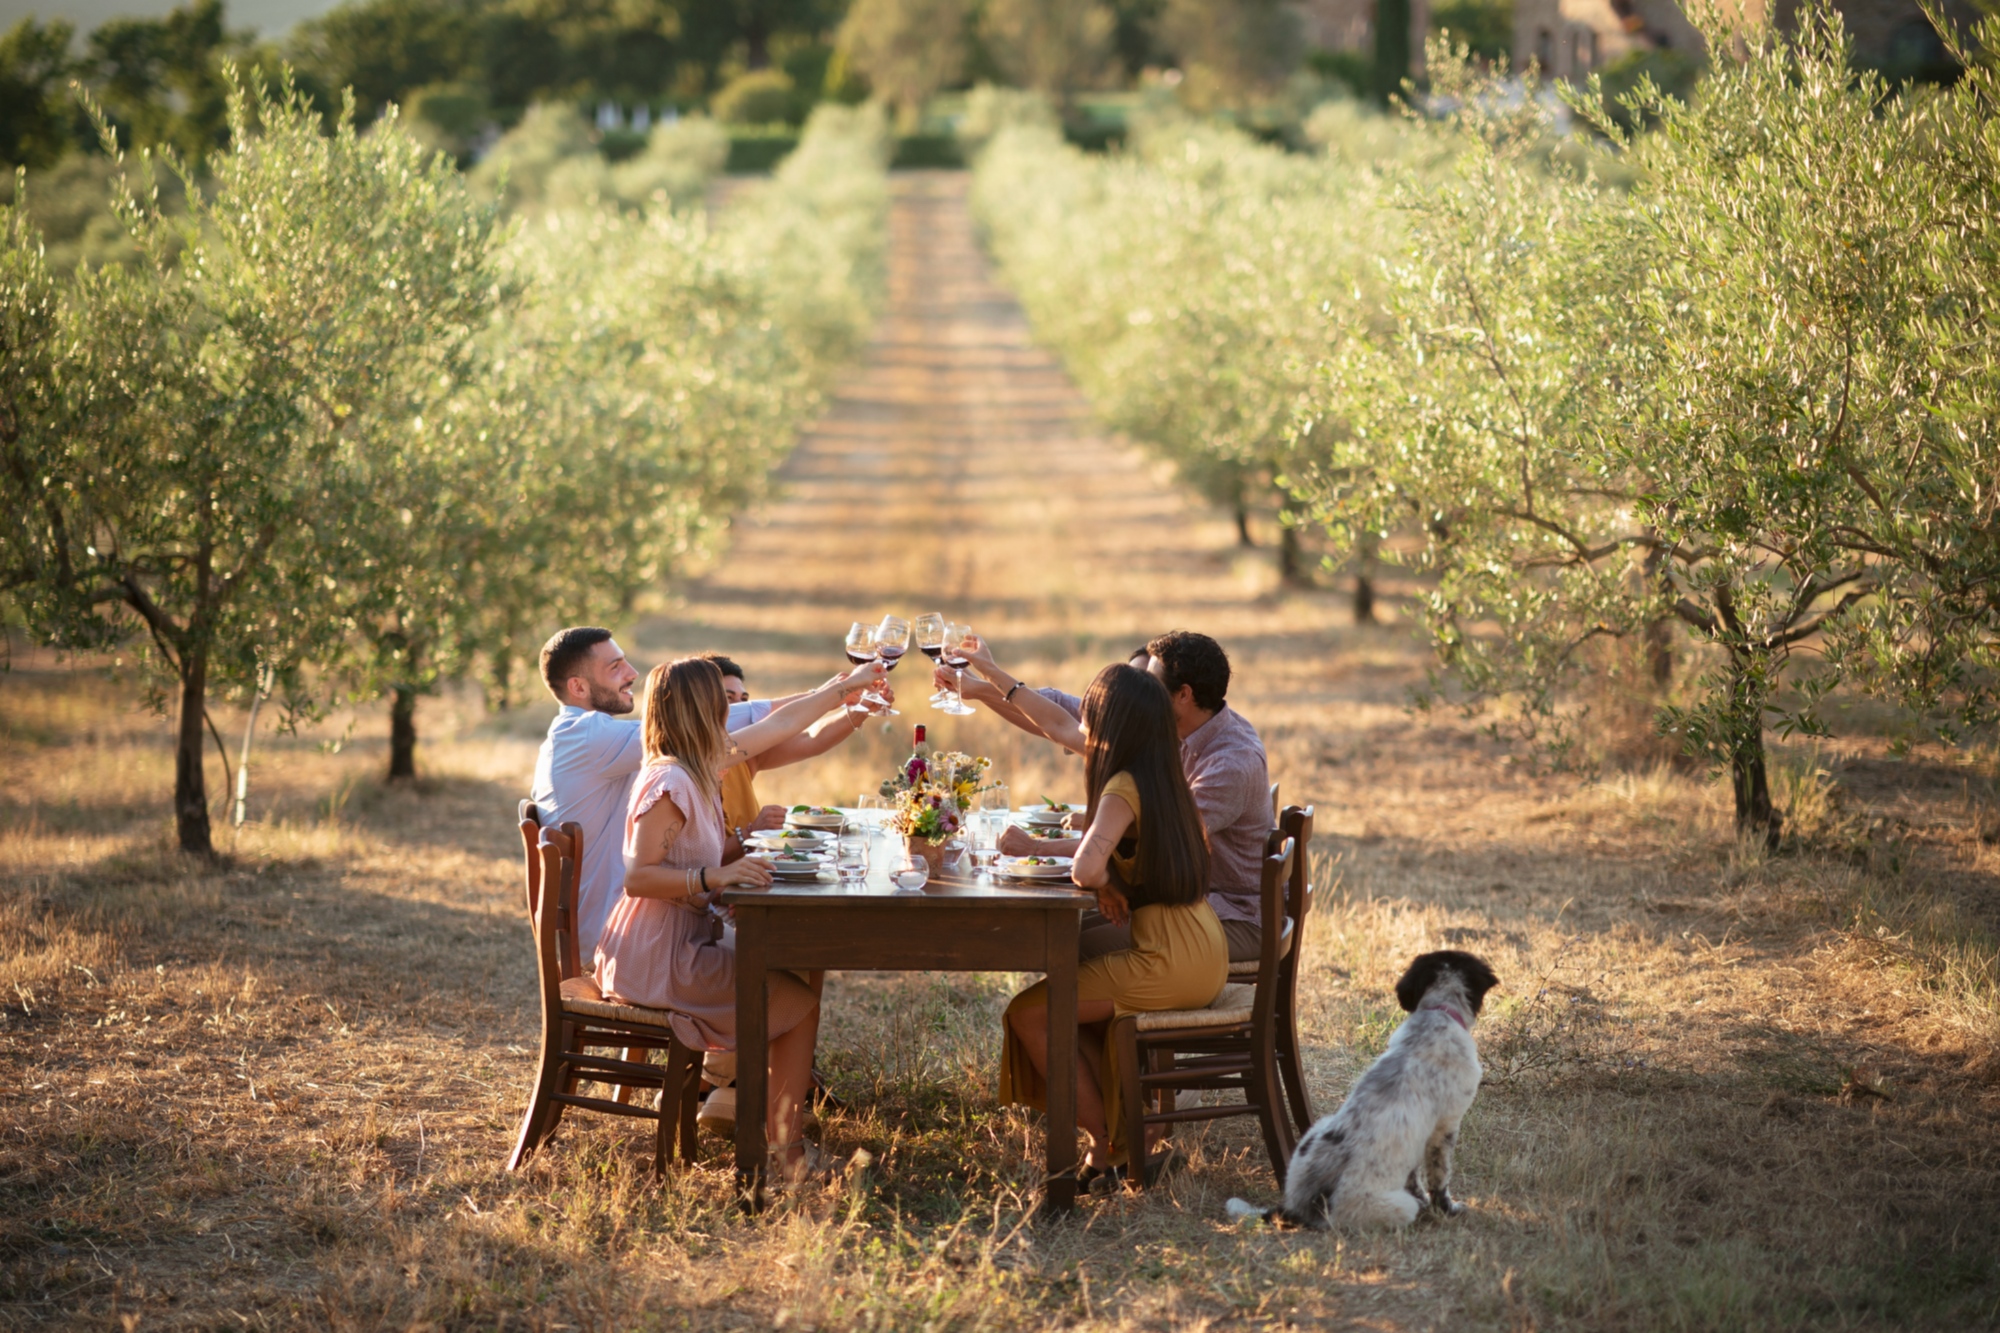 Lunch in the olive grove in Radicondoli